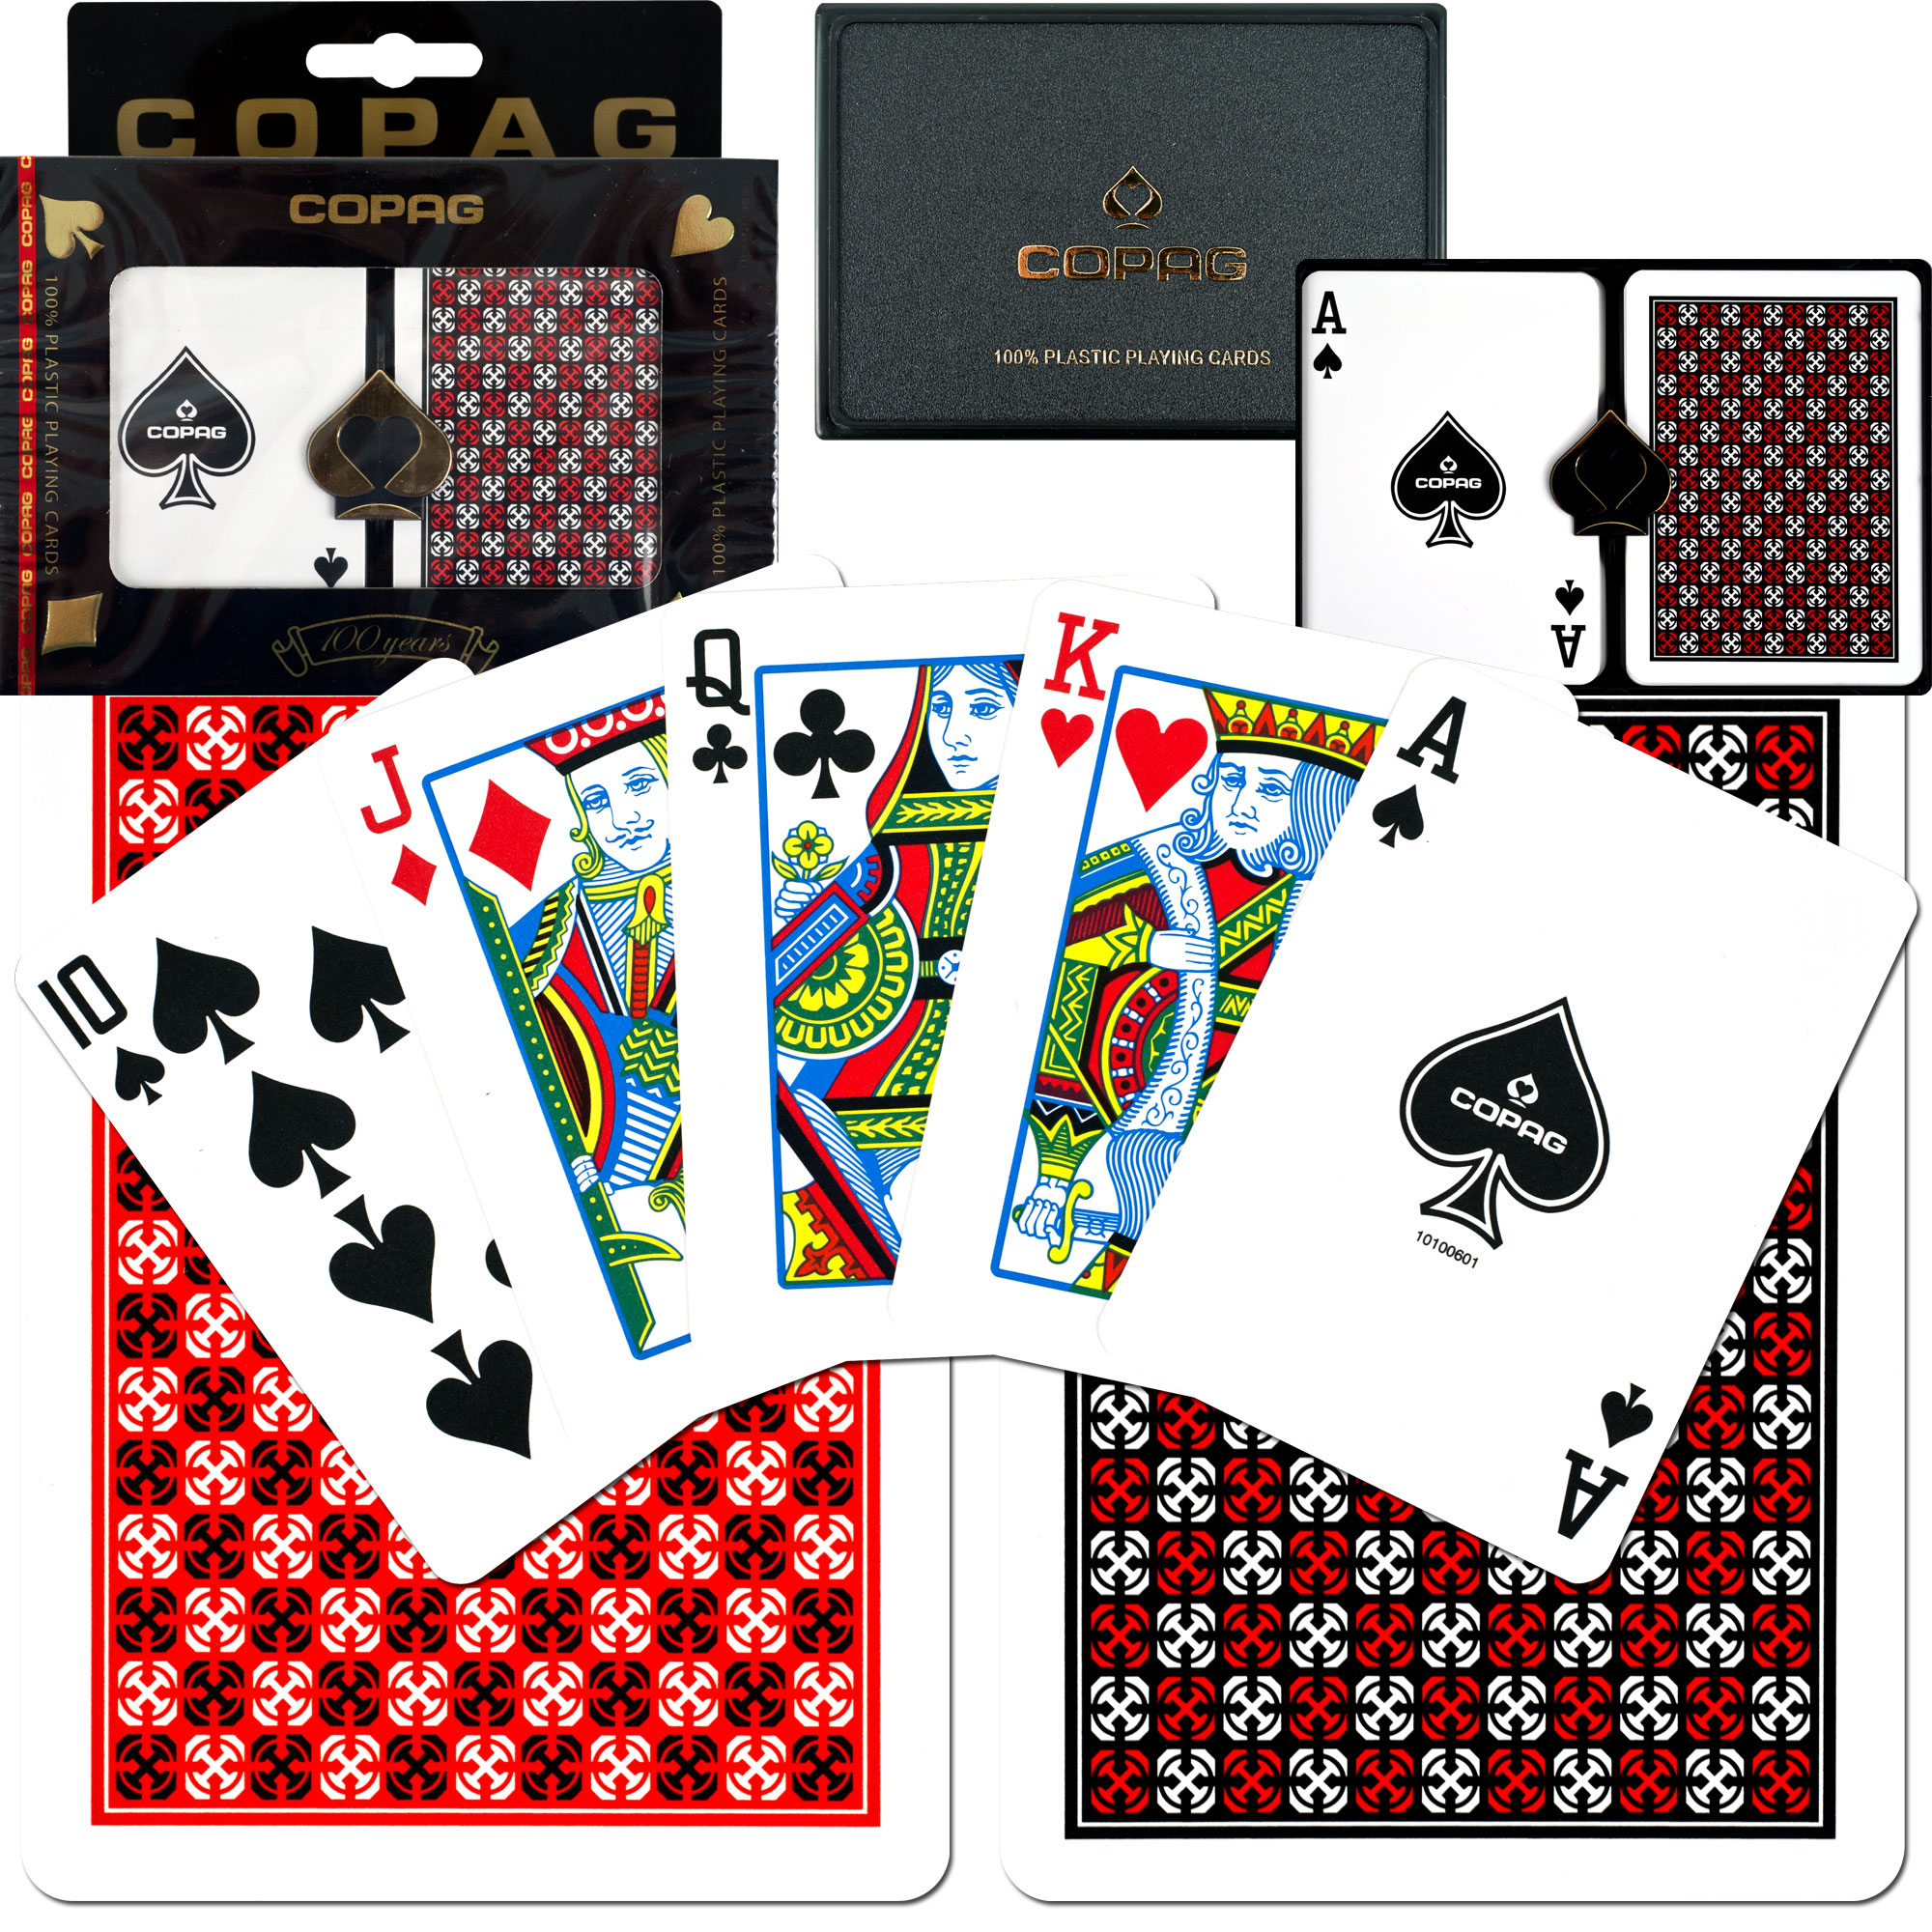 Trademark Copag Poker Size REGULAR Index - Master Design Setup